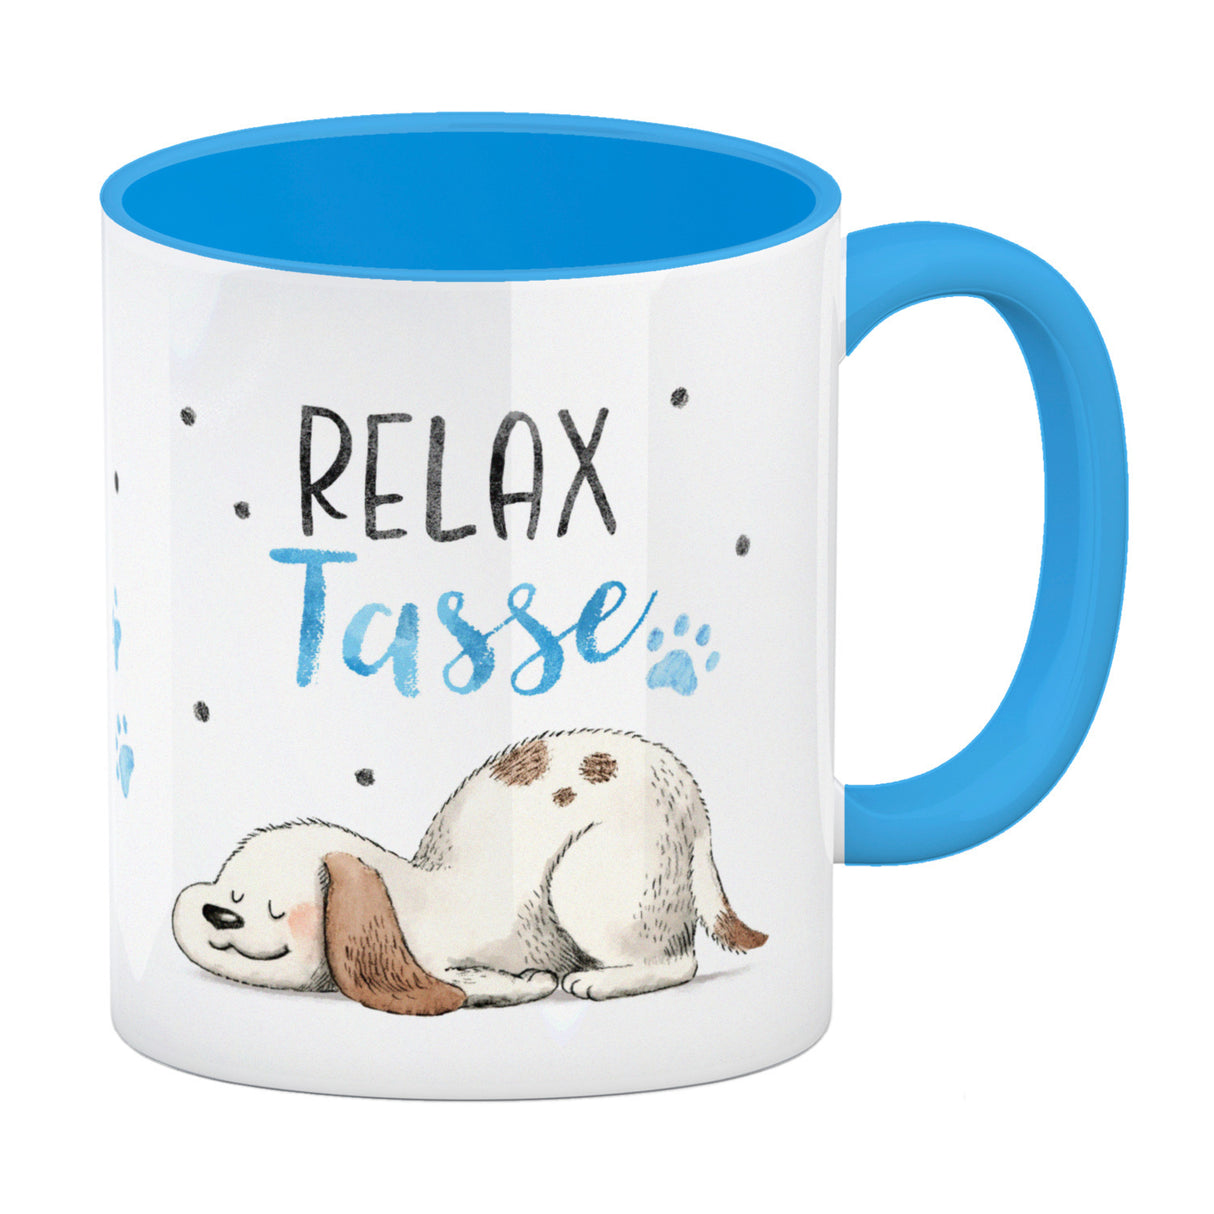 Relaxter Hund Kaffeebecher mit Spruch Relax Tasse